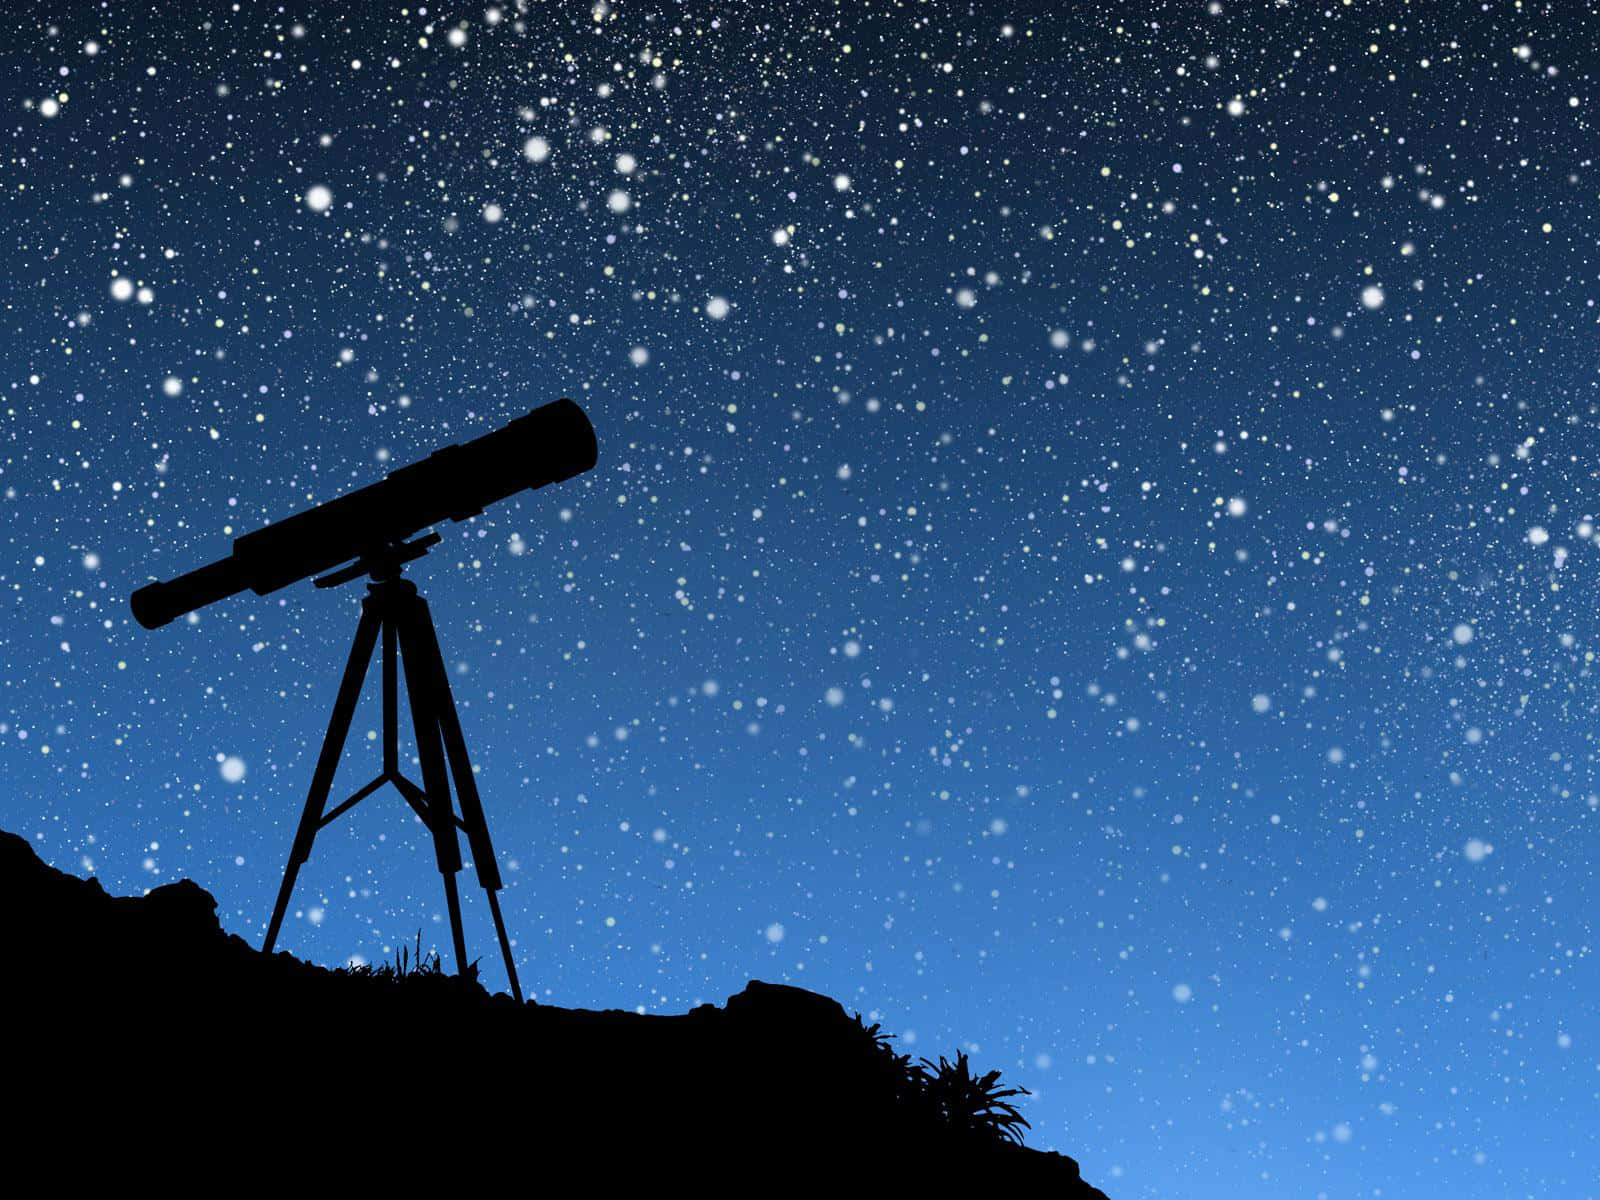 Attanvända En Teleskop För Att Titta På Himmelska Objekt